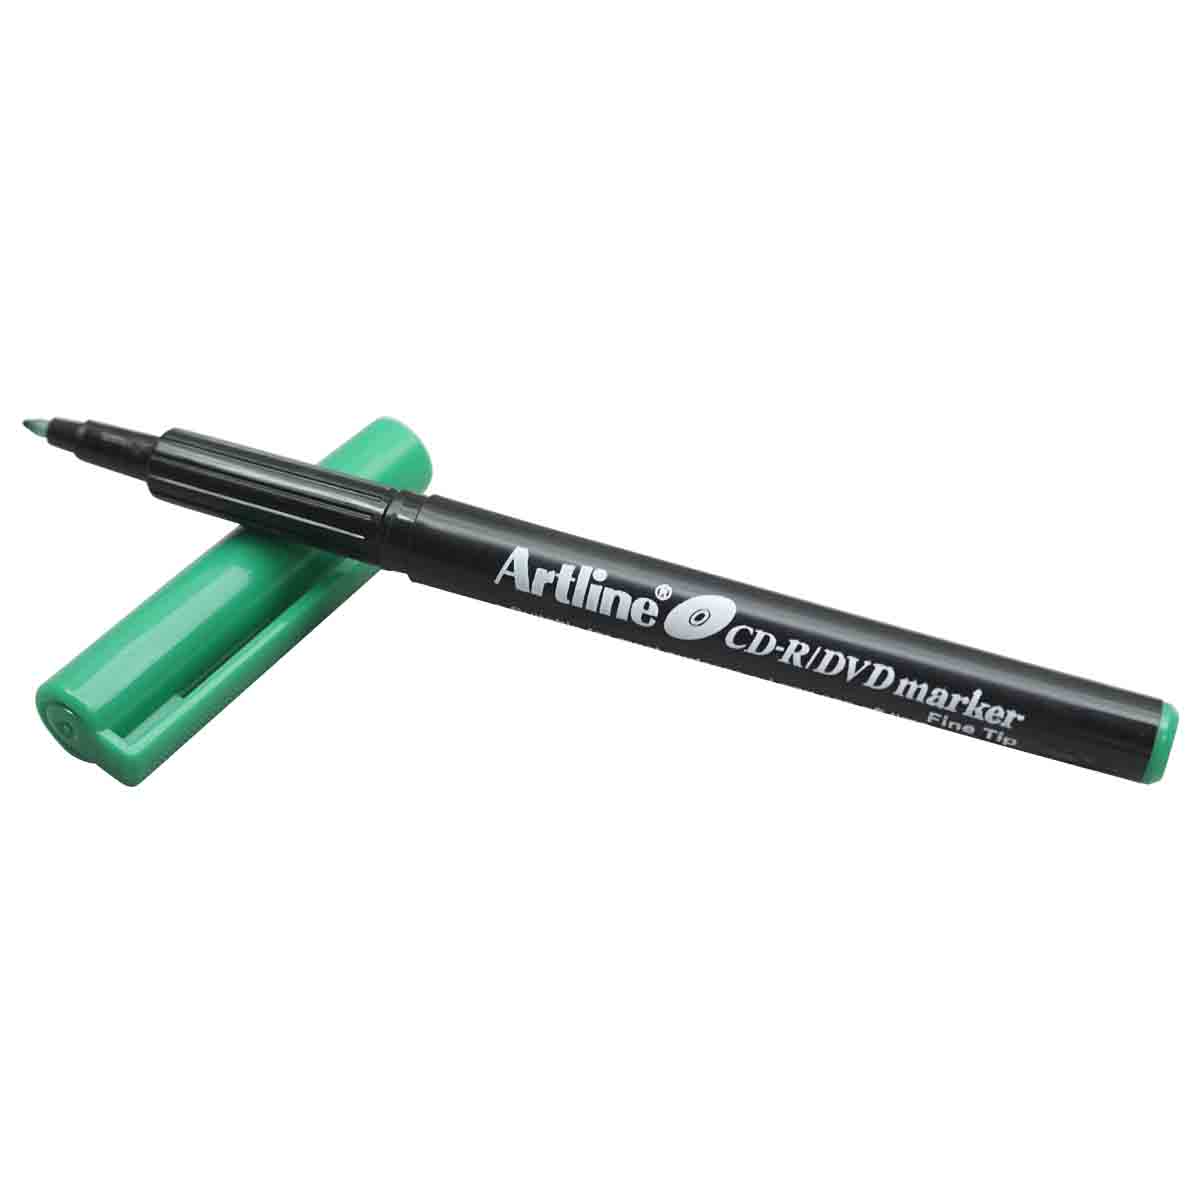 Artline Green Color CD Marker Pen SKU 19210